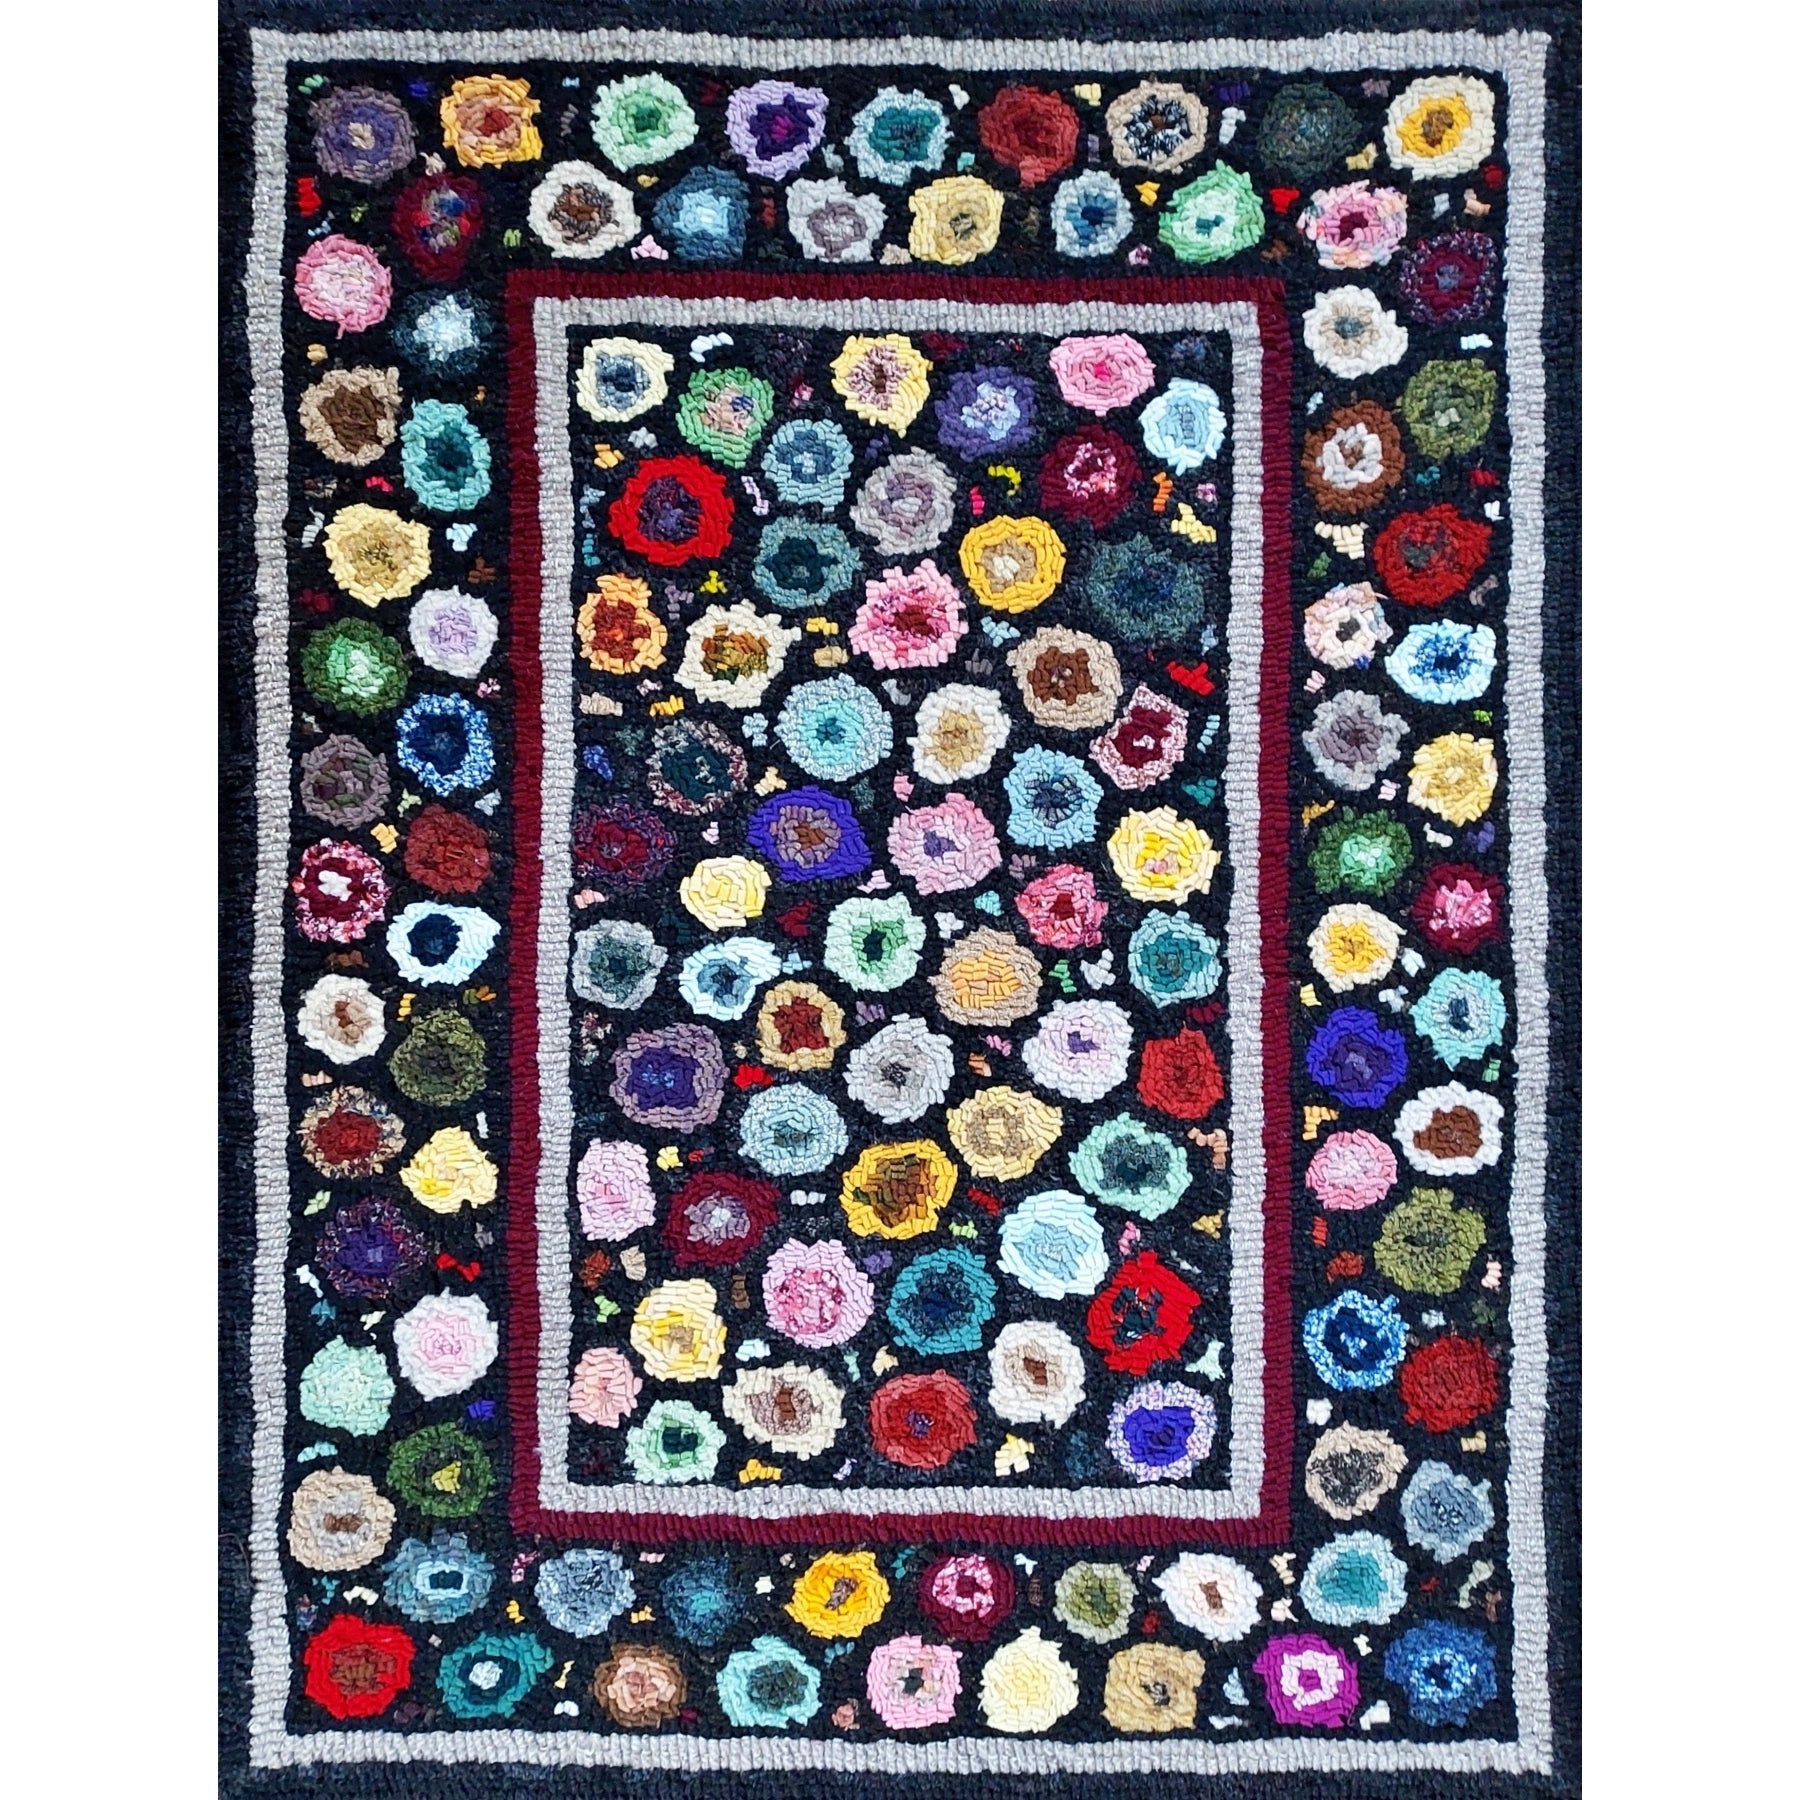 Mille Fleur, rug hooked by Jeanne Surdi